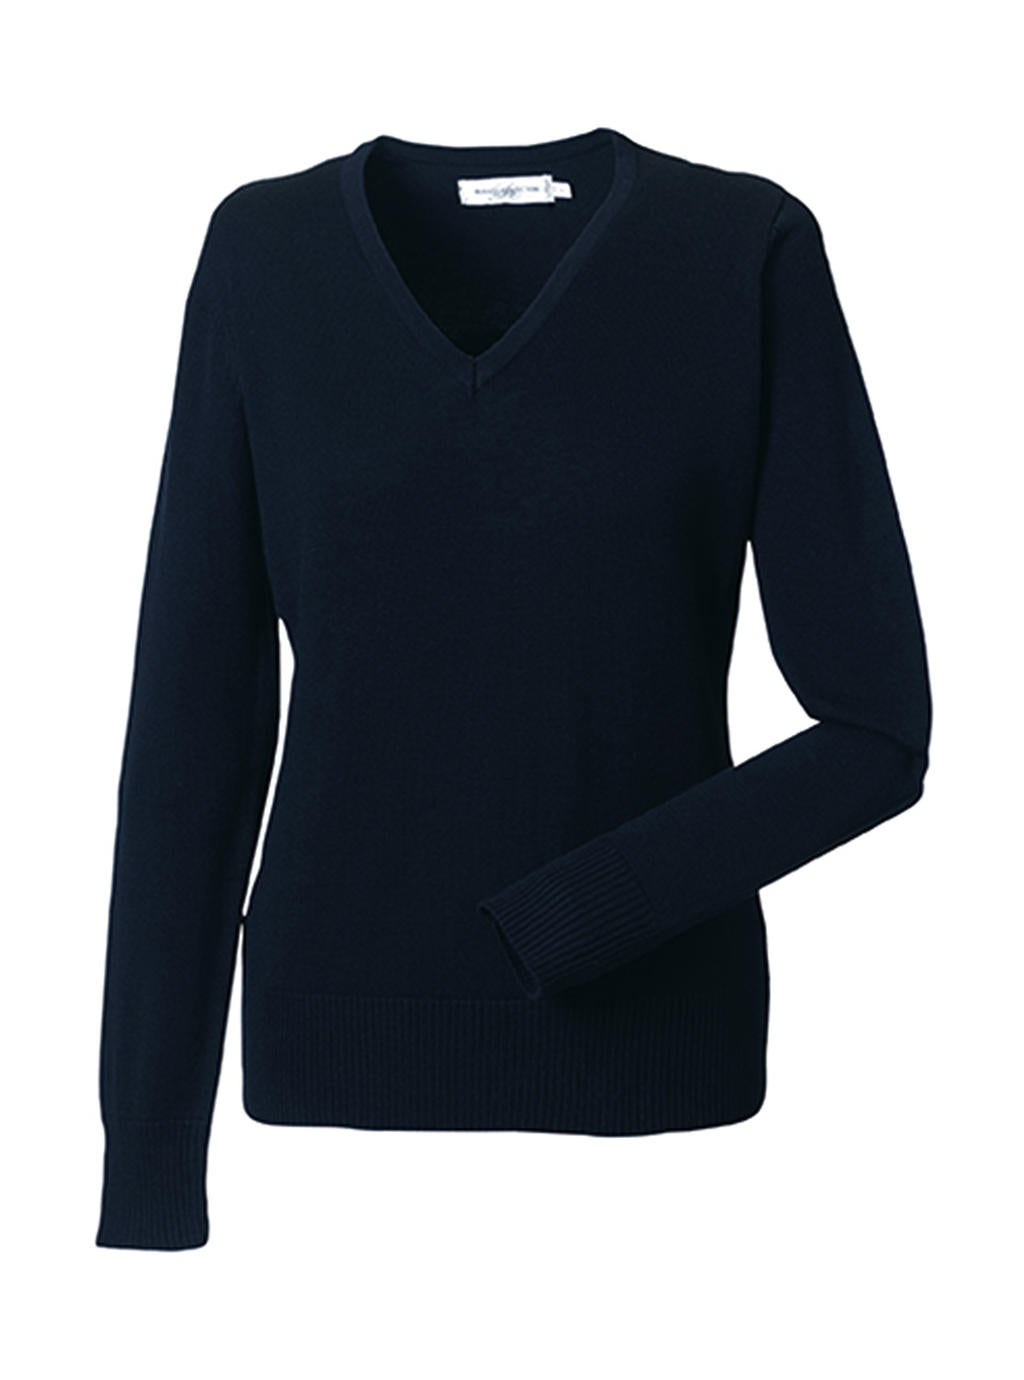 Russel Damen Pullover Pulli Sweater Sweatshirt V-Ausschnitt langarm